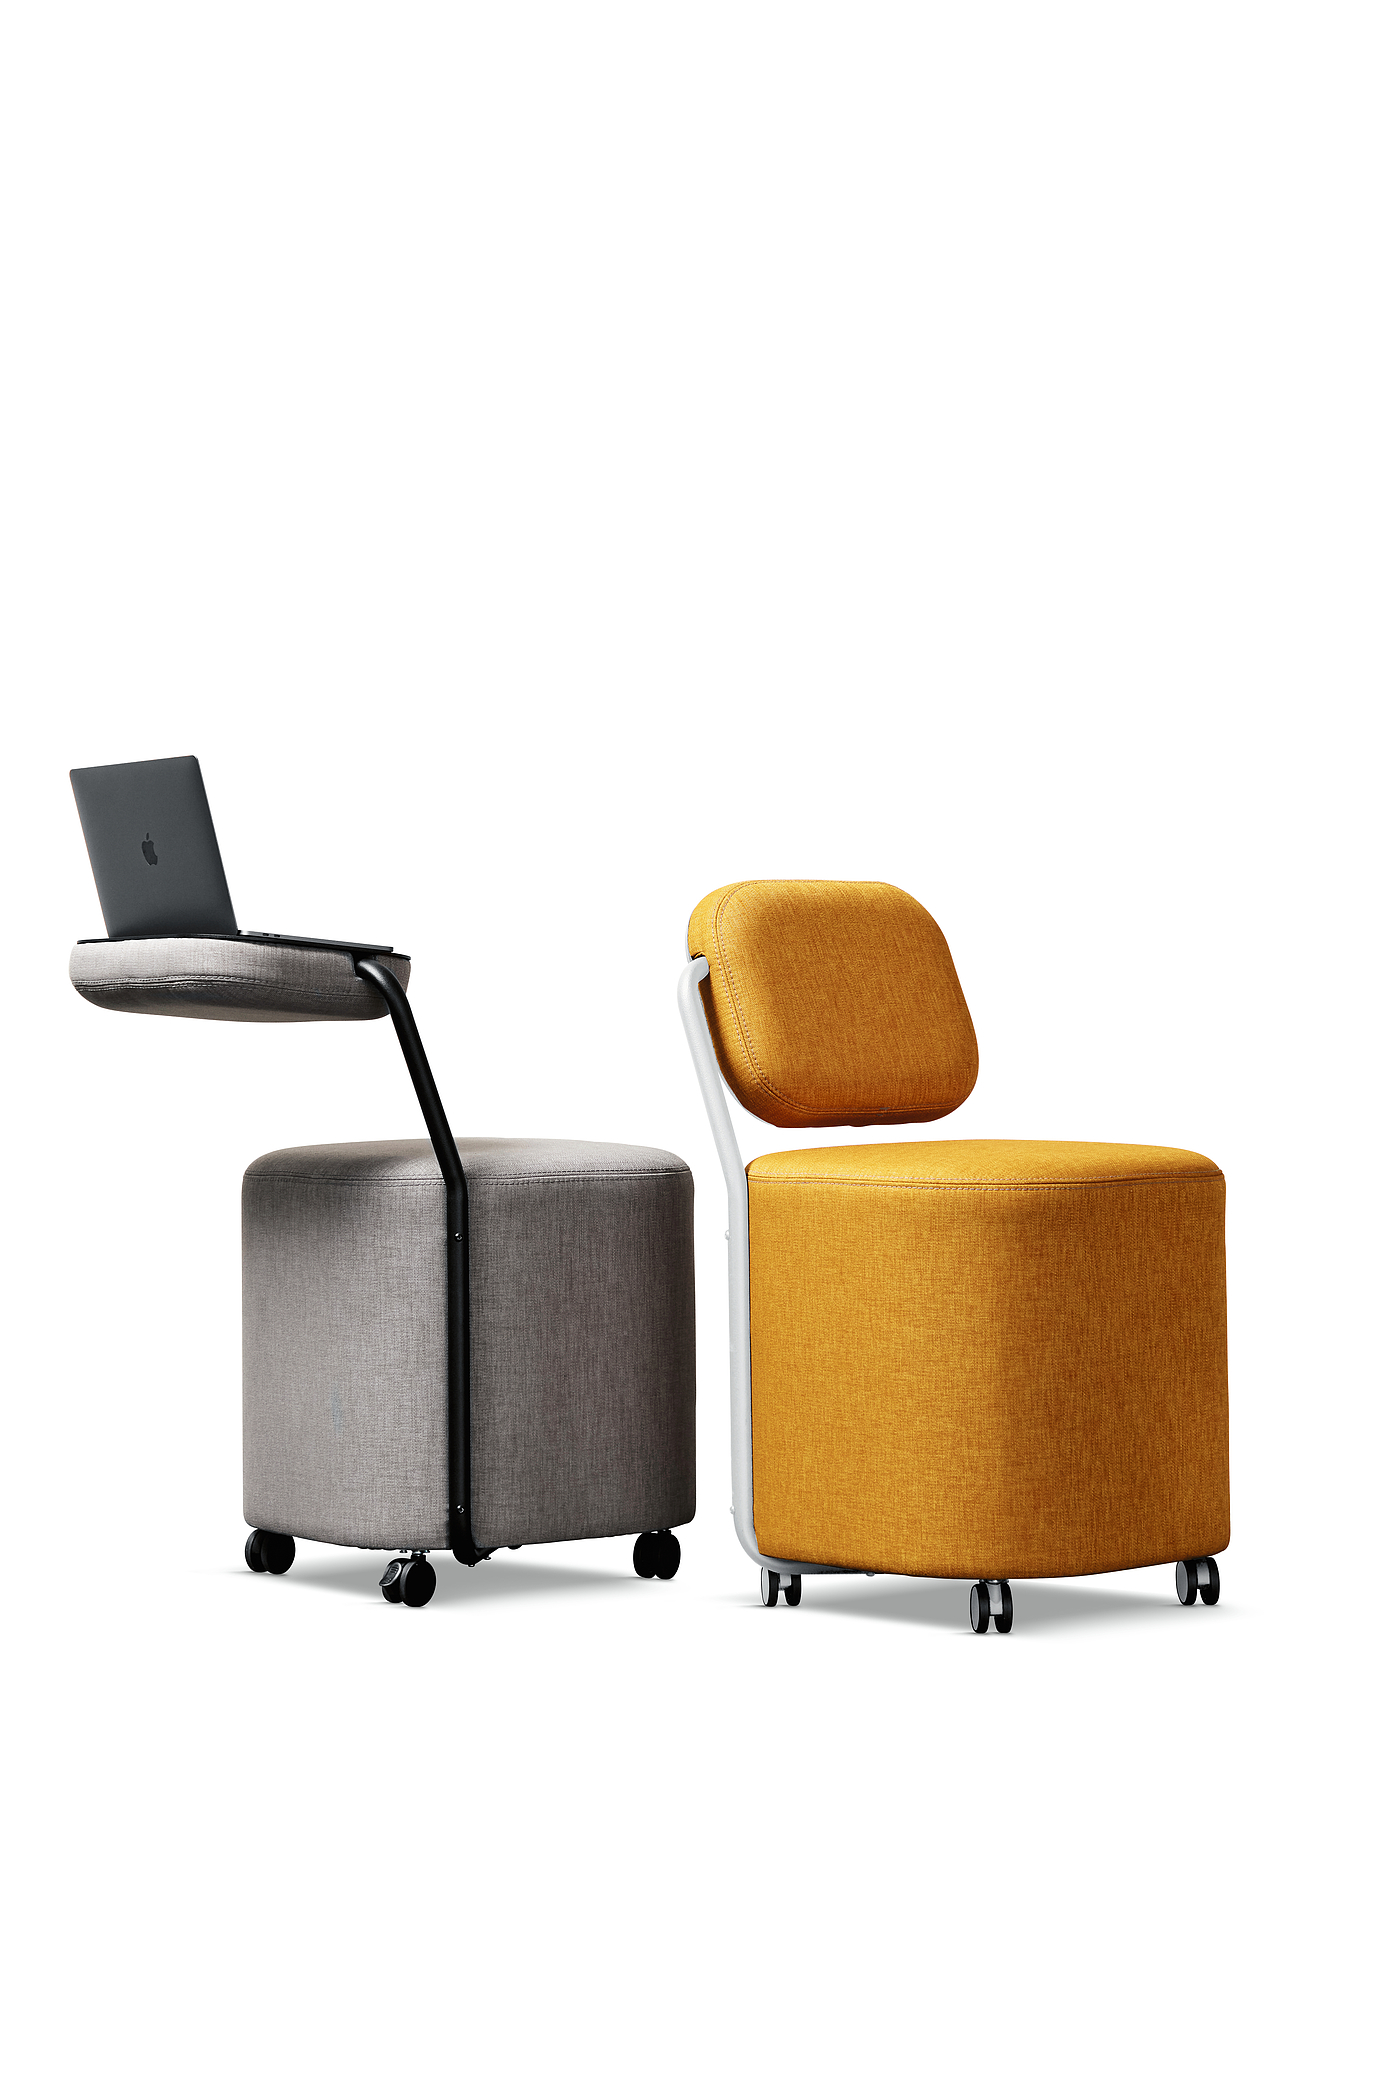 2021红点产品设计大奖，iQseat，椅子，凳子，